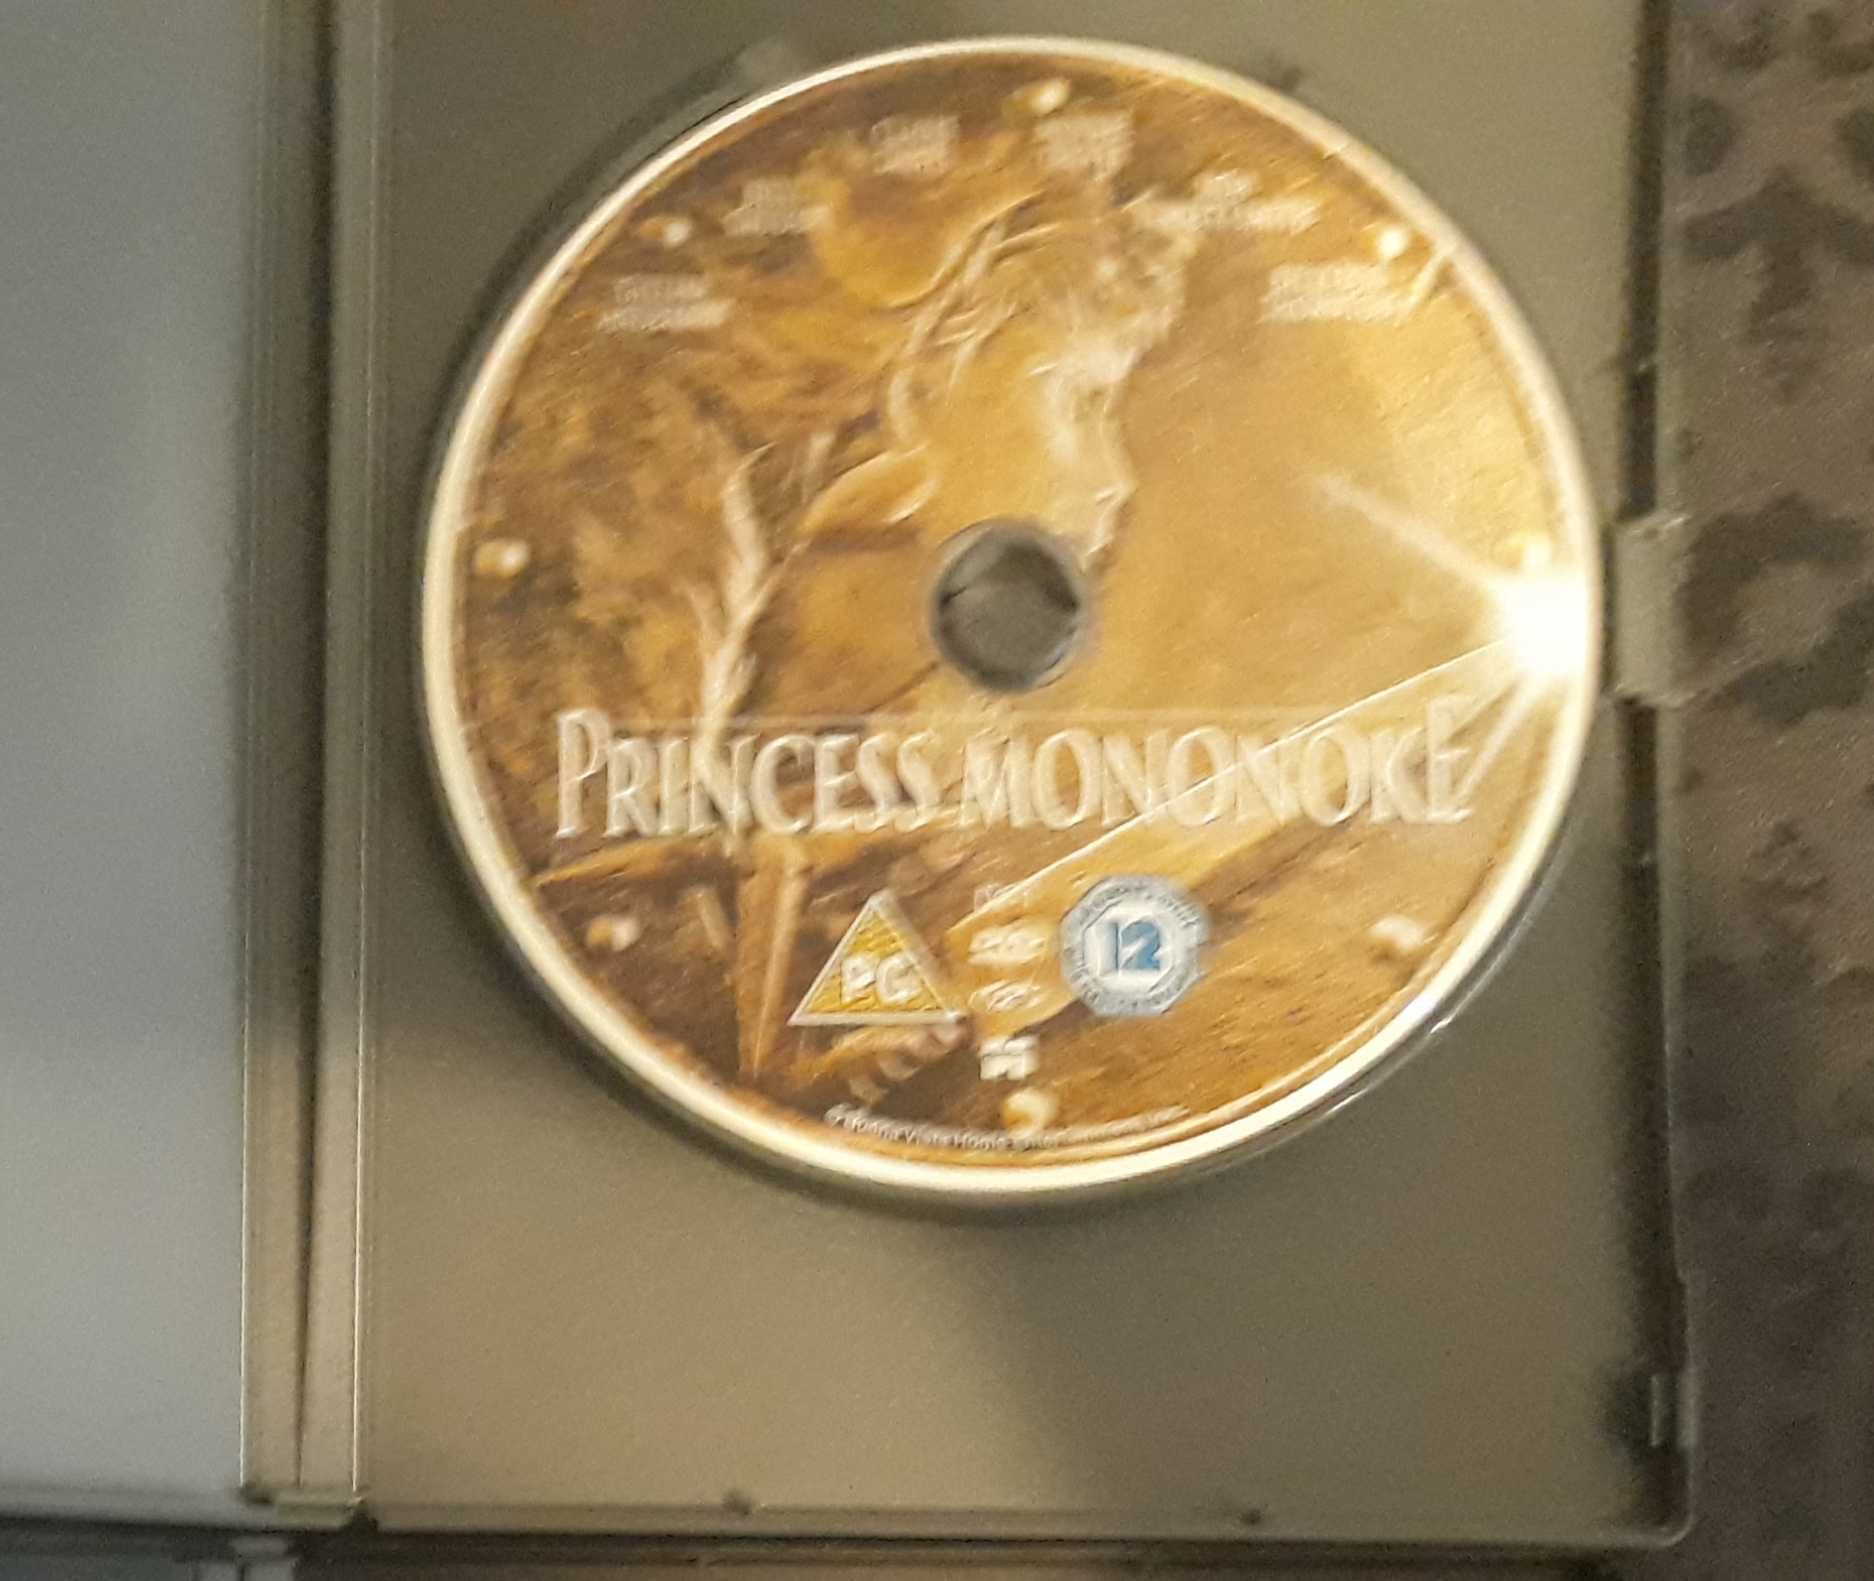 Filme anime Estúdios Ghibli : A Princesa Mononoke Edição Inglesa